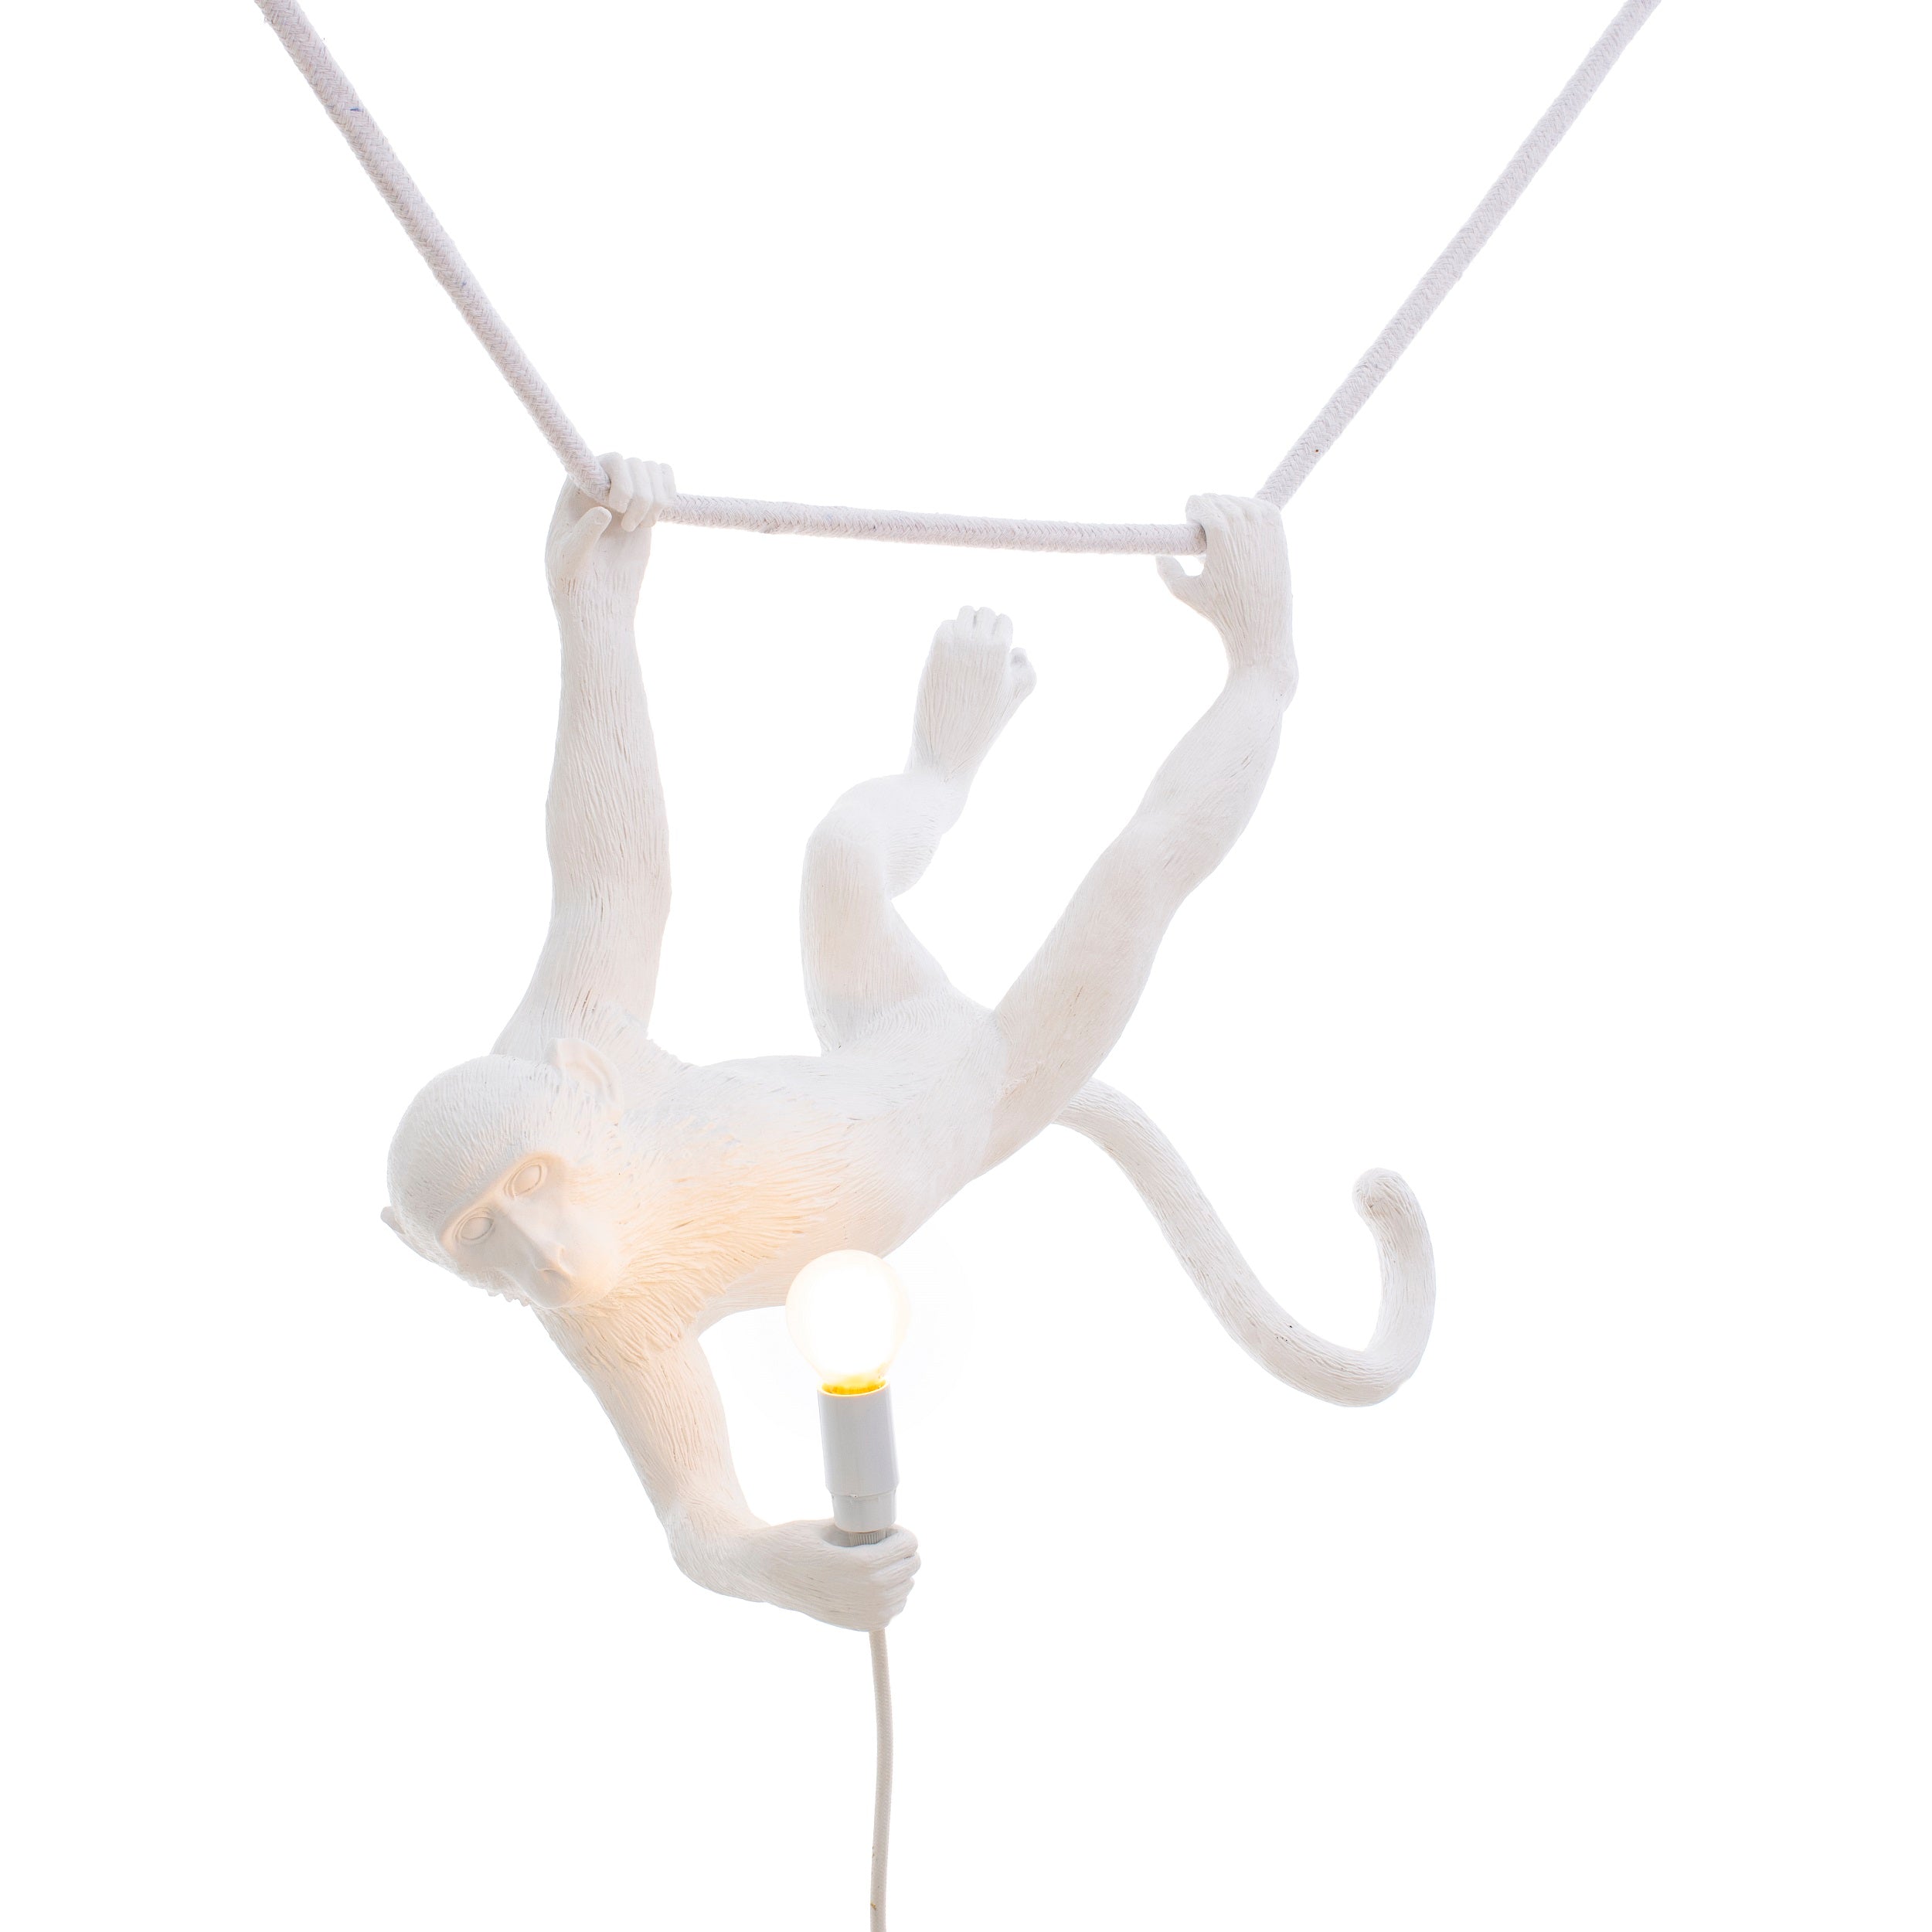 Seletti Monkey Lamp Lampada in resina Swing bianca